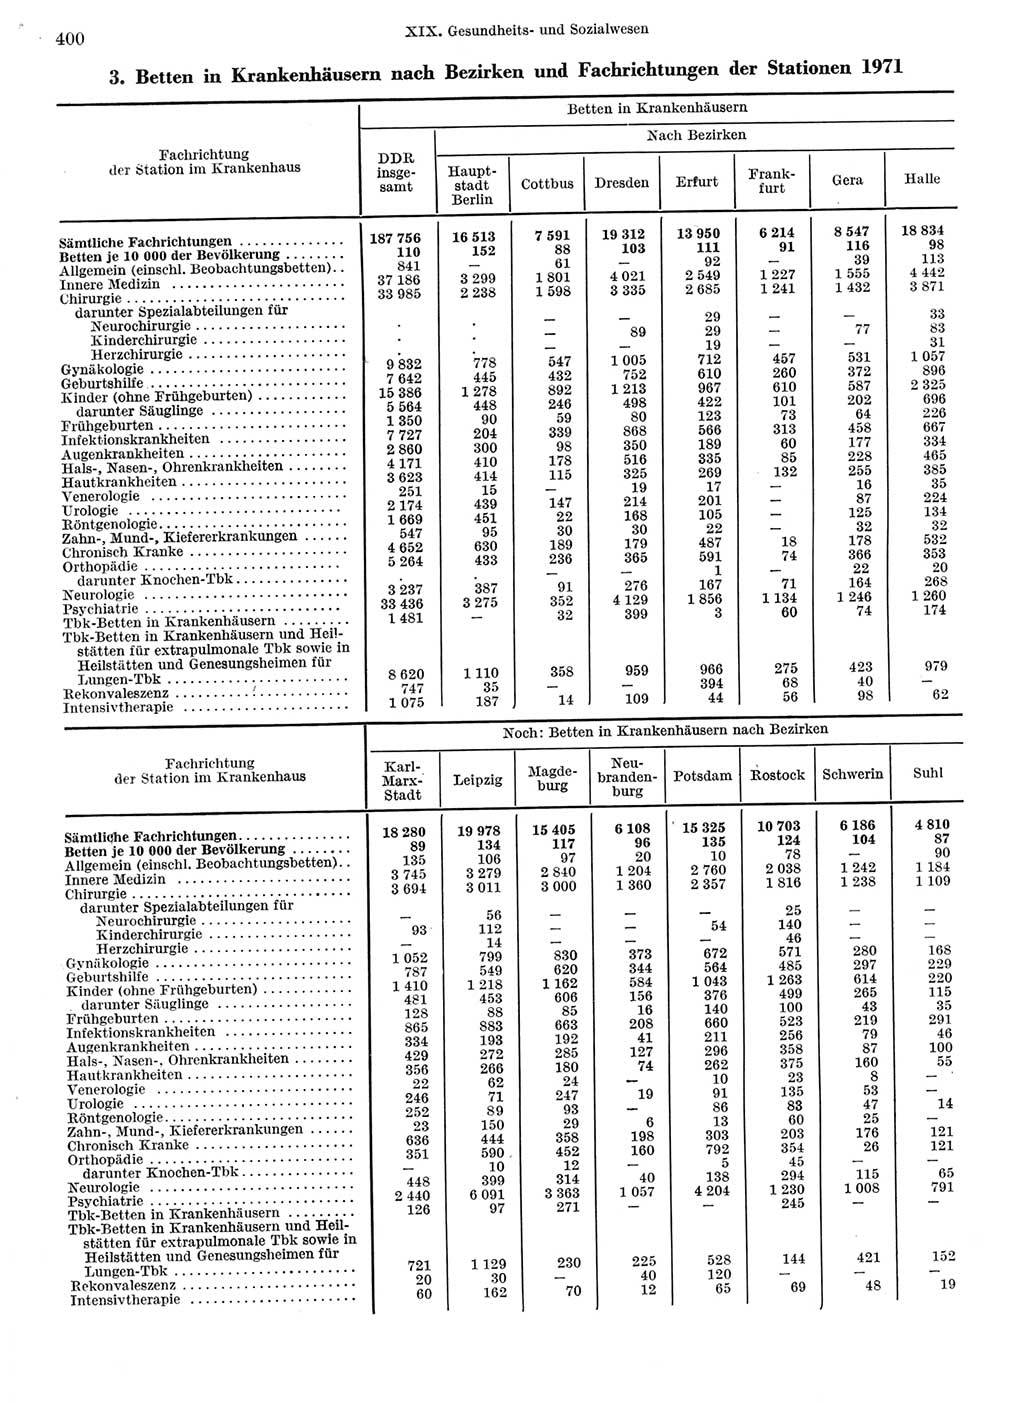 Statistisches Jahrbuch der Deutschen Demokratischen Republik (DDR) 1973, Seite 400 (Stat. Jb. DDR 1973, S. 400)